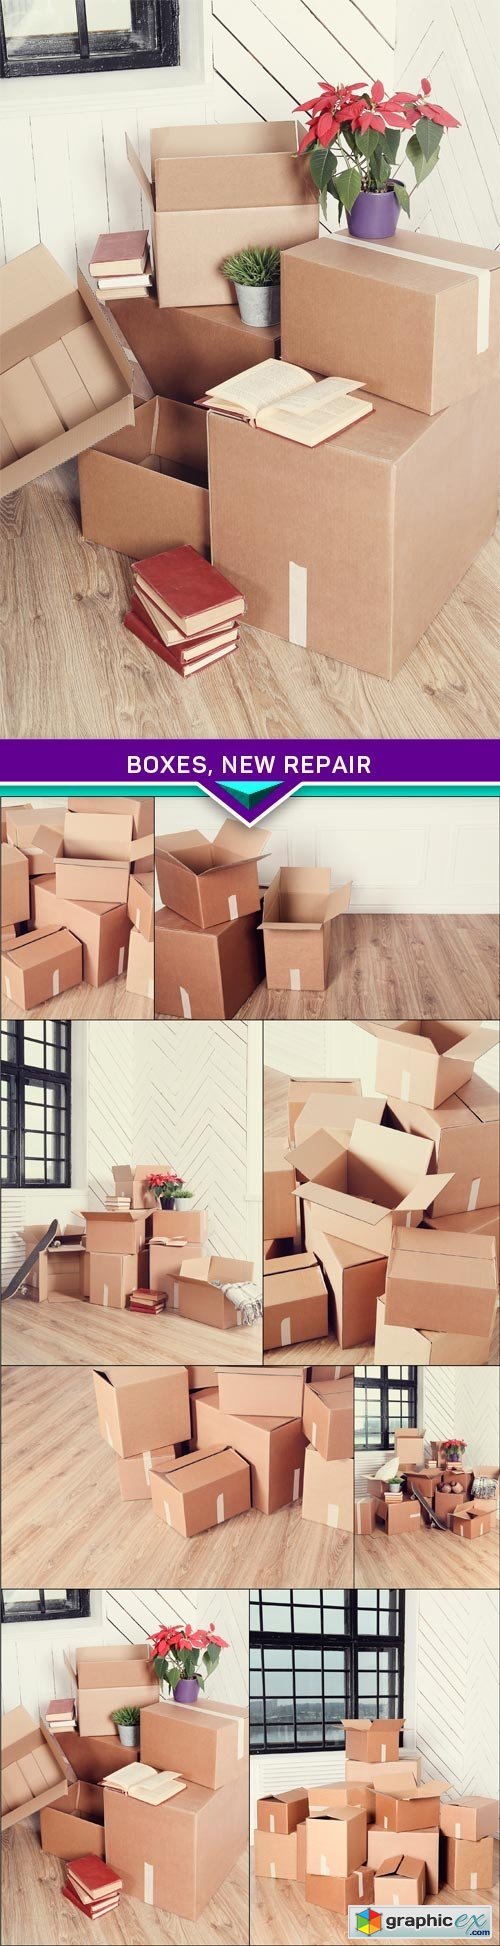 Boxes, new repair 8 x JPEG